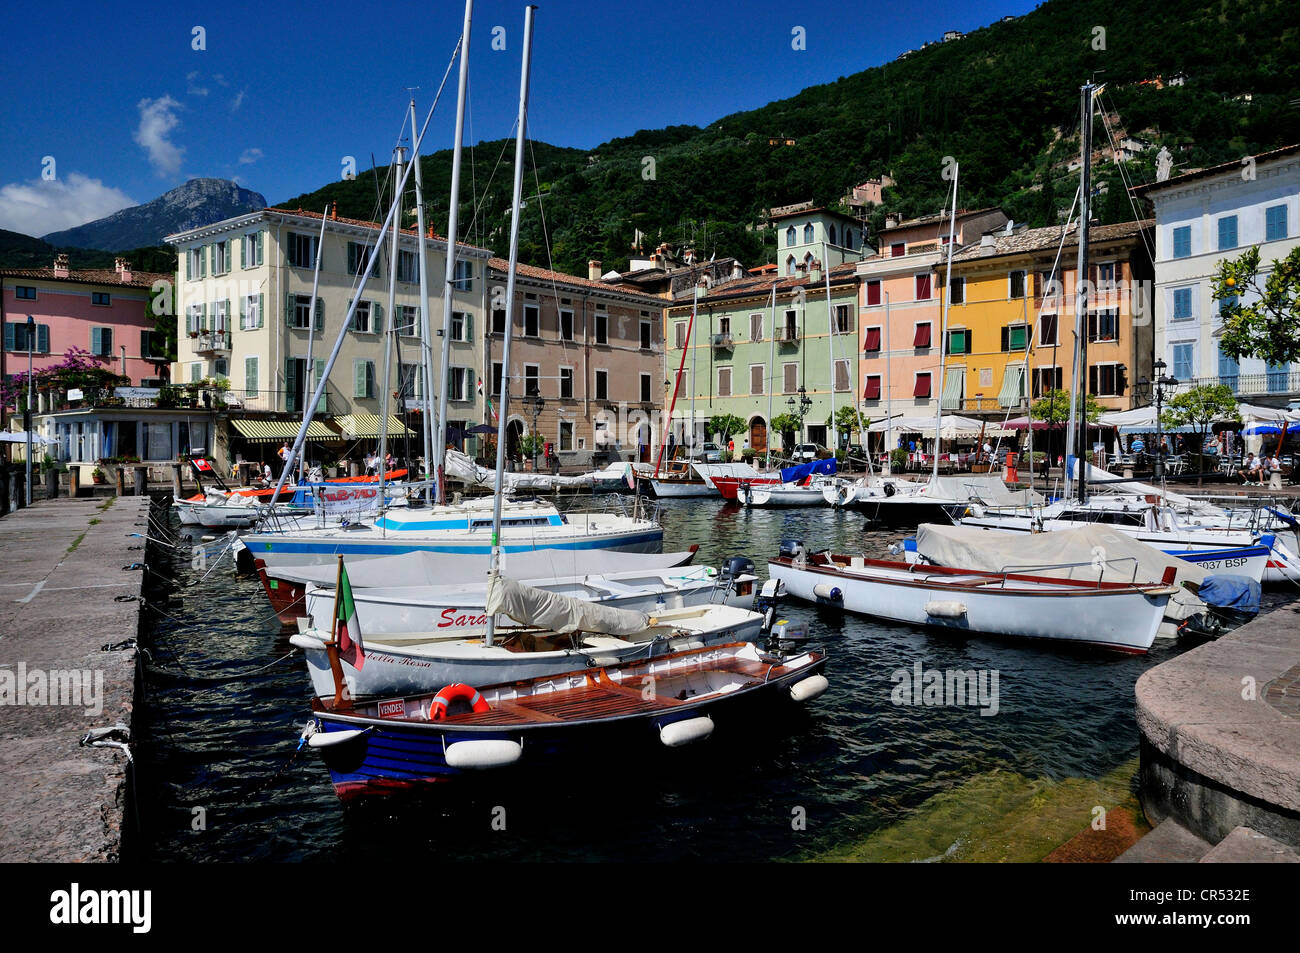 Port of Gargnano, Lake Garda, Trentino, Italy, Europe Stock Photo